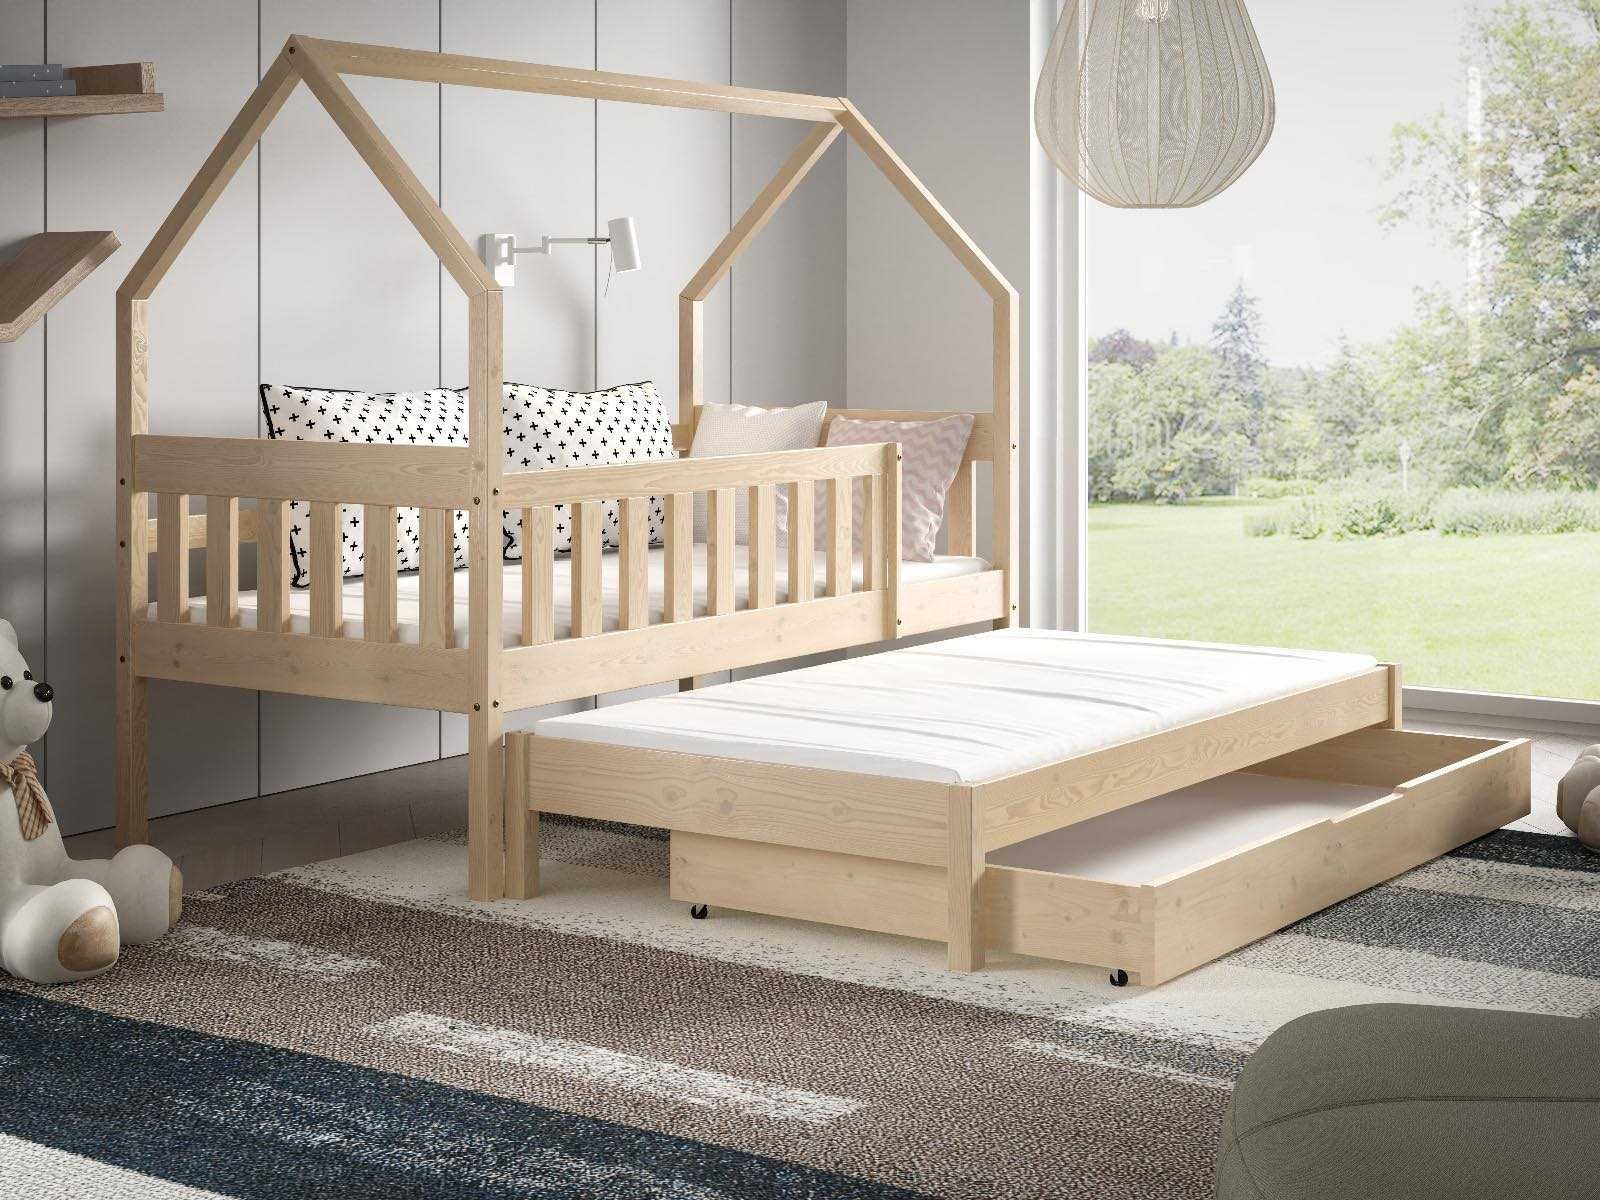 Łóżko dla dwójki dzieci DOMEK luna 160x80 - w zestawie materace!